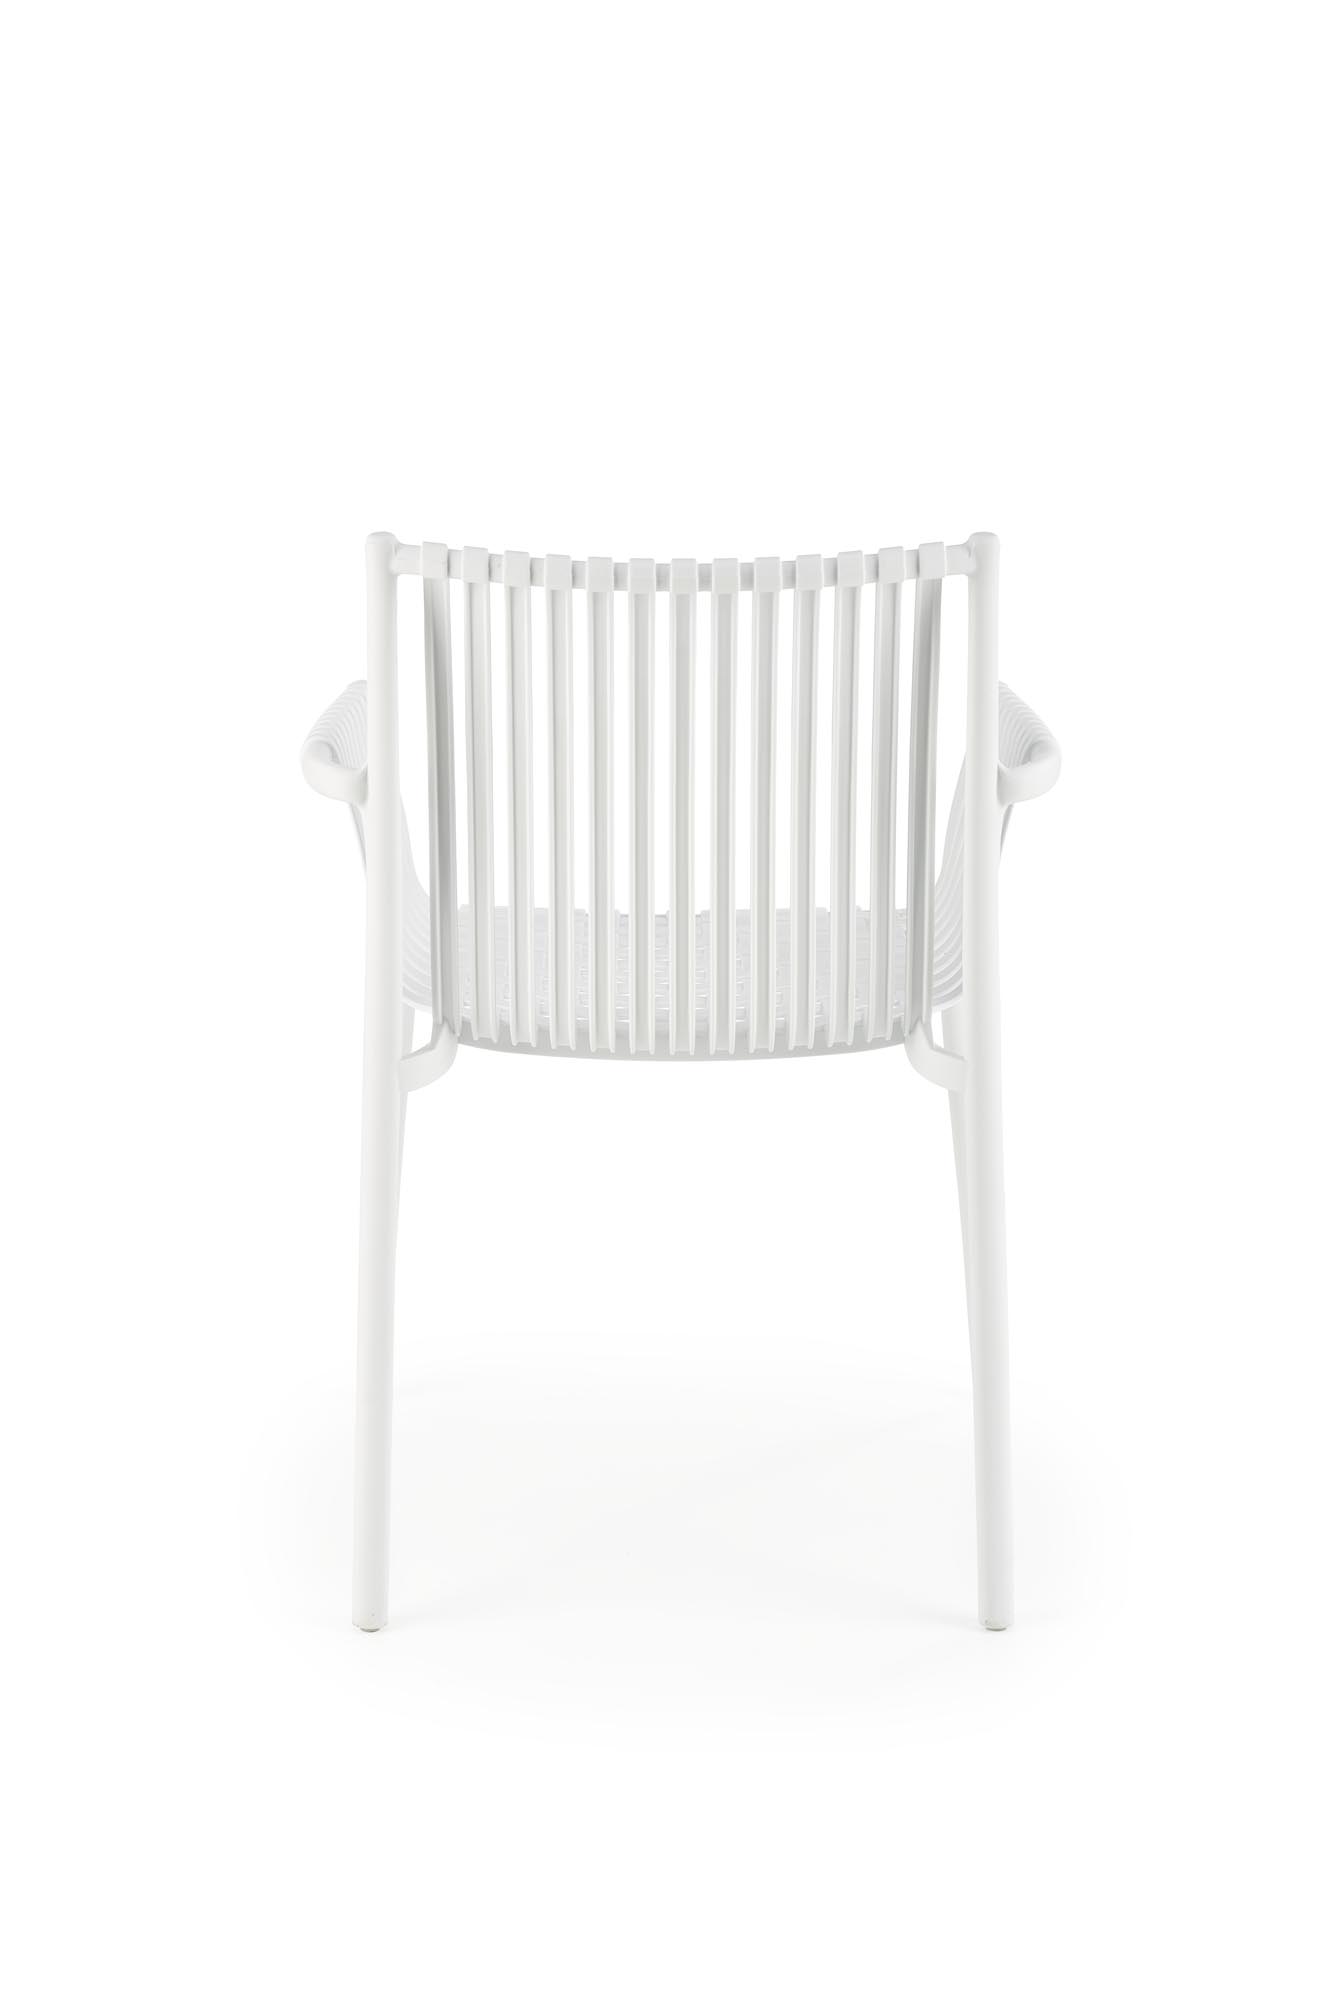 Krzesło z tworzywa sztucznego K492 - biały krzesło z tworzywa sztucznego k492 - biały